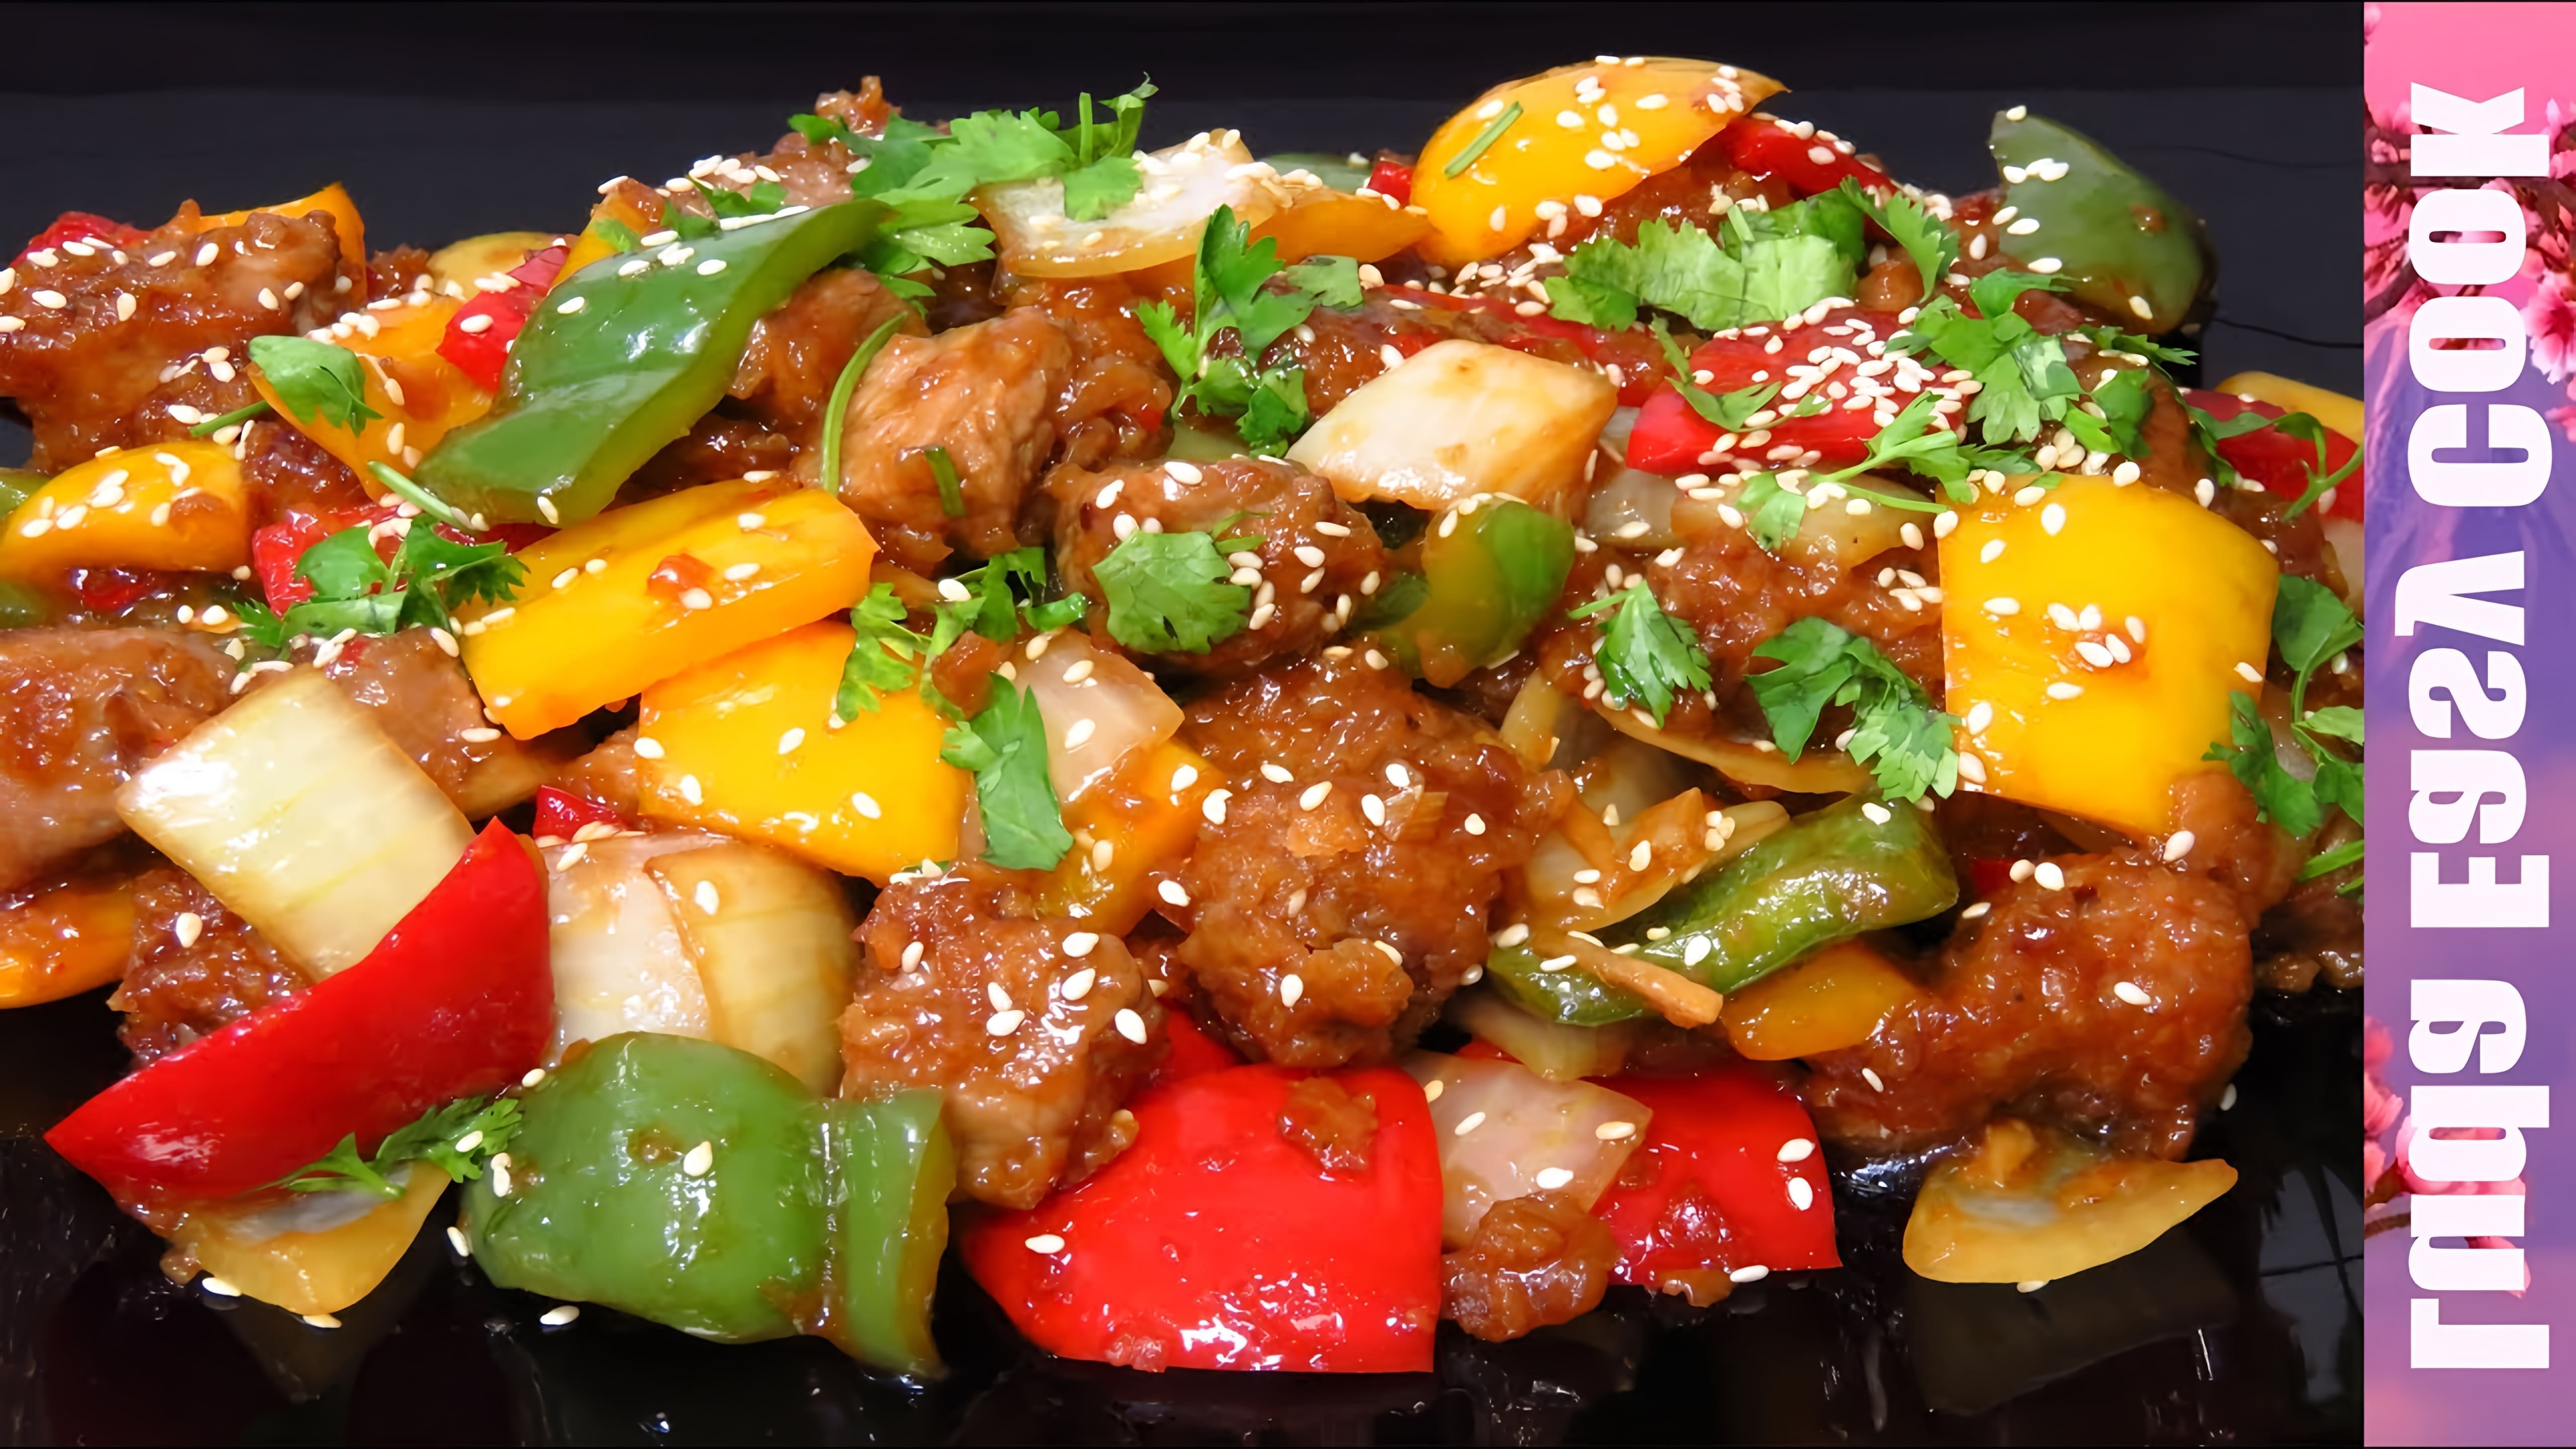 В этом видео демонстрируется процесс приготовления популярного блюда китайской кухни - нежной говядины в кисло-сладком соусе